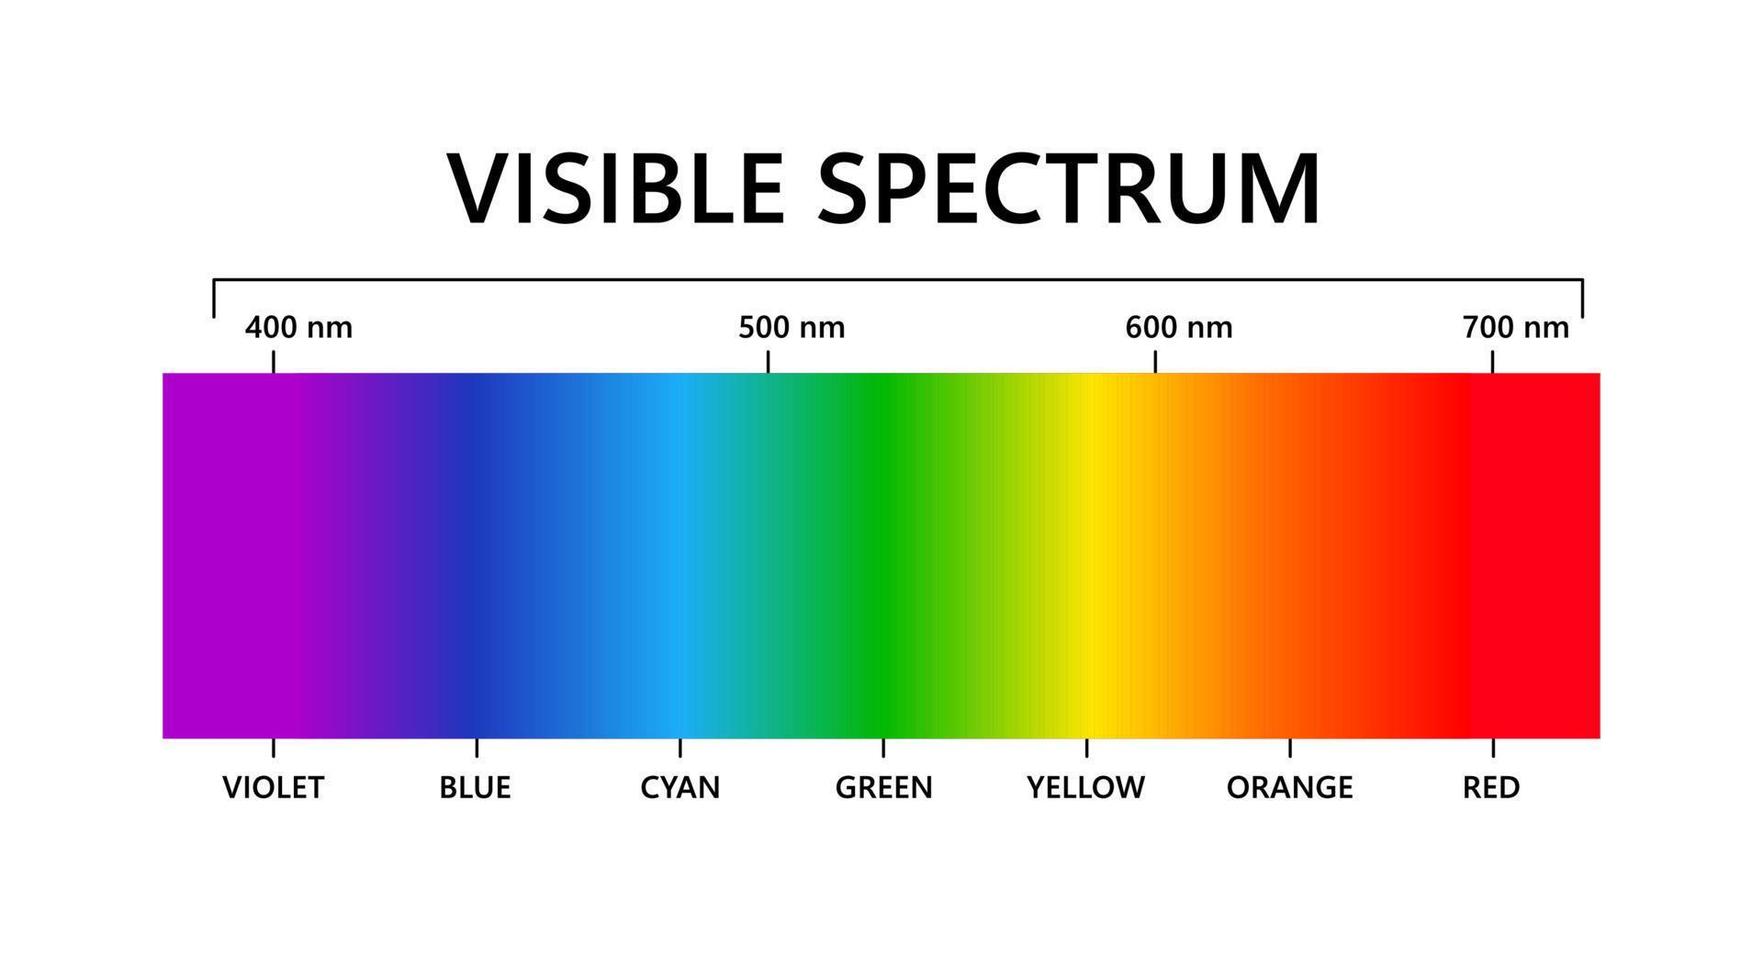 spektrum av synligt ljus. elektromagnetiskt synligt färgspektrum för mänskligt öga. vektor gradientdiagram med våglängd och färger. pedagogisk illustration på vit bakgrund